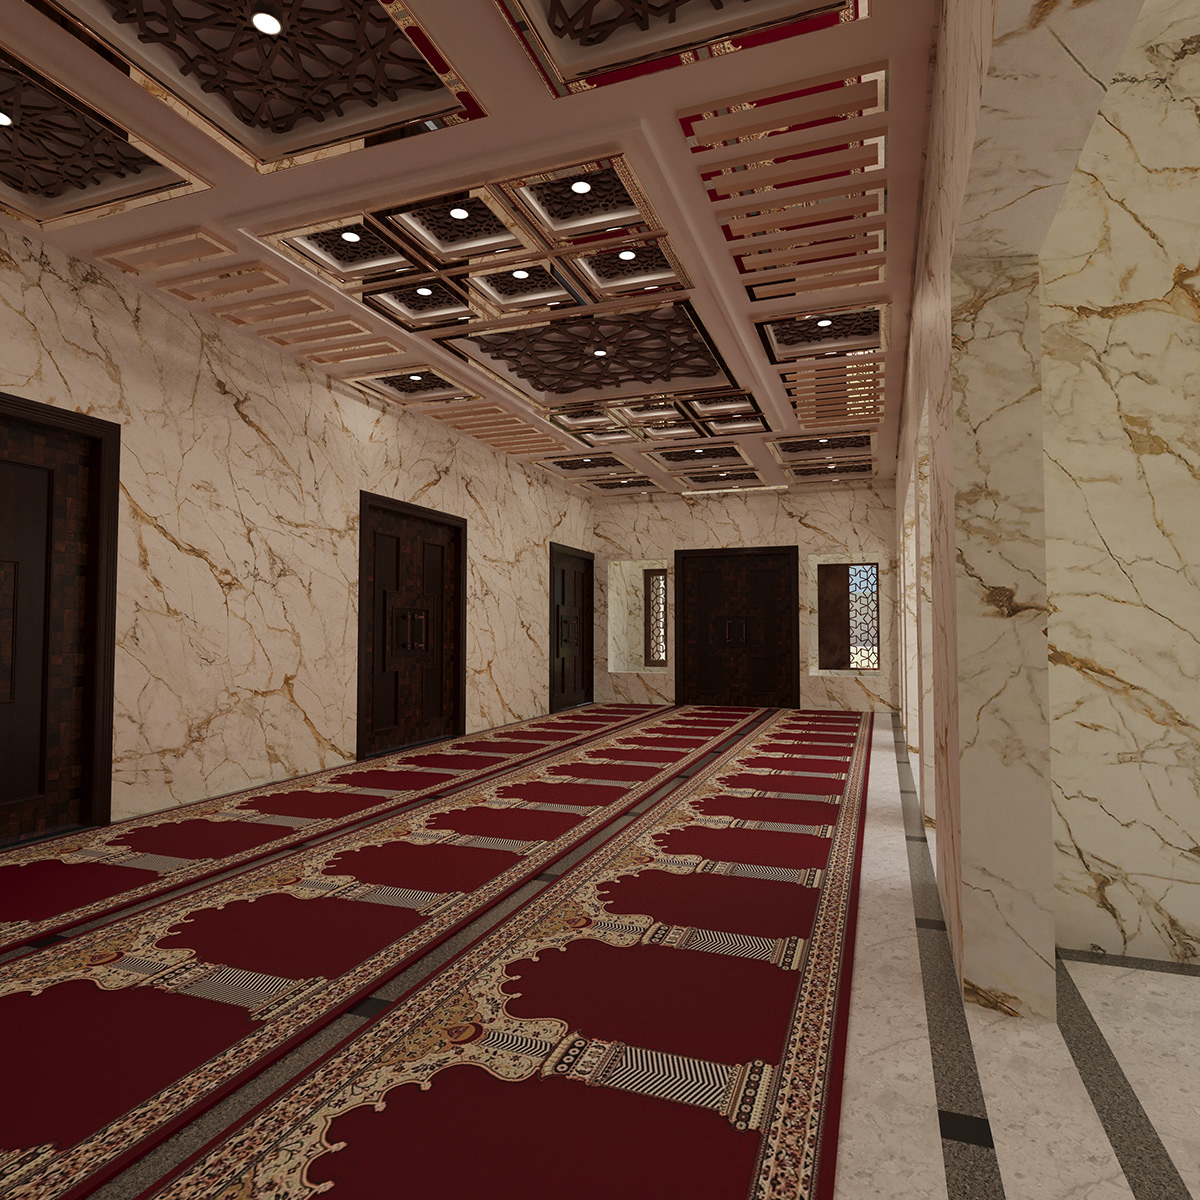 allah Muhammad Quran masjid islam Prayer Rug minber door verandah shandlier